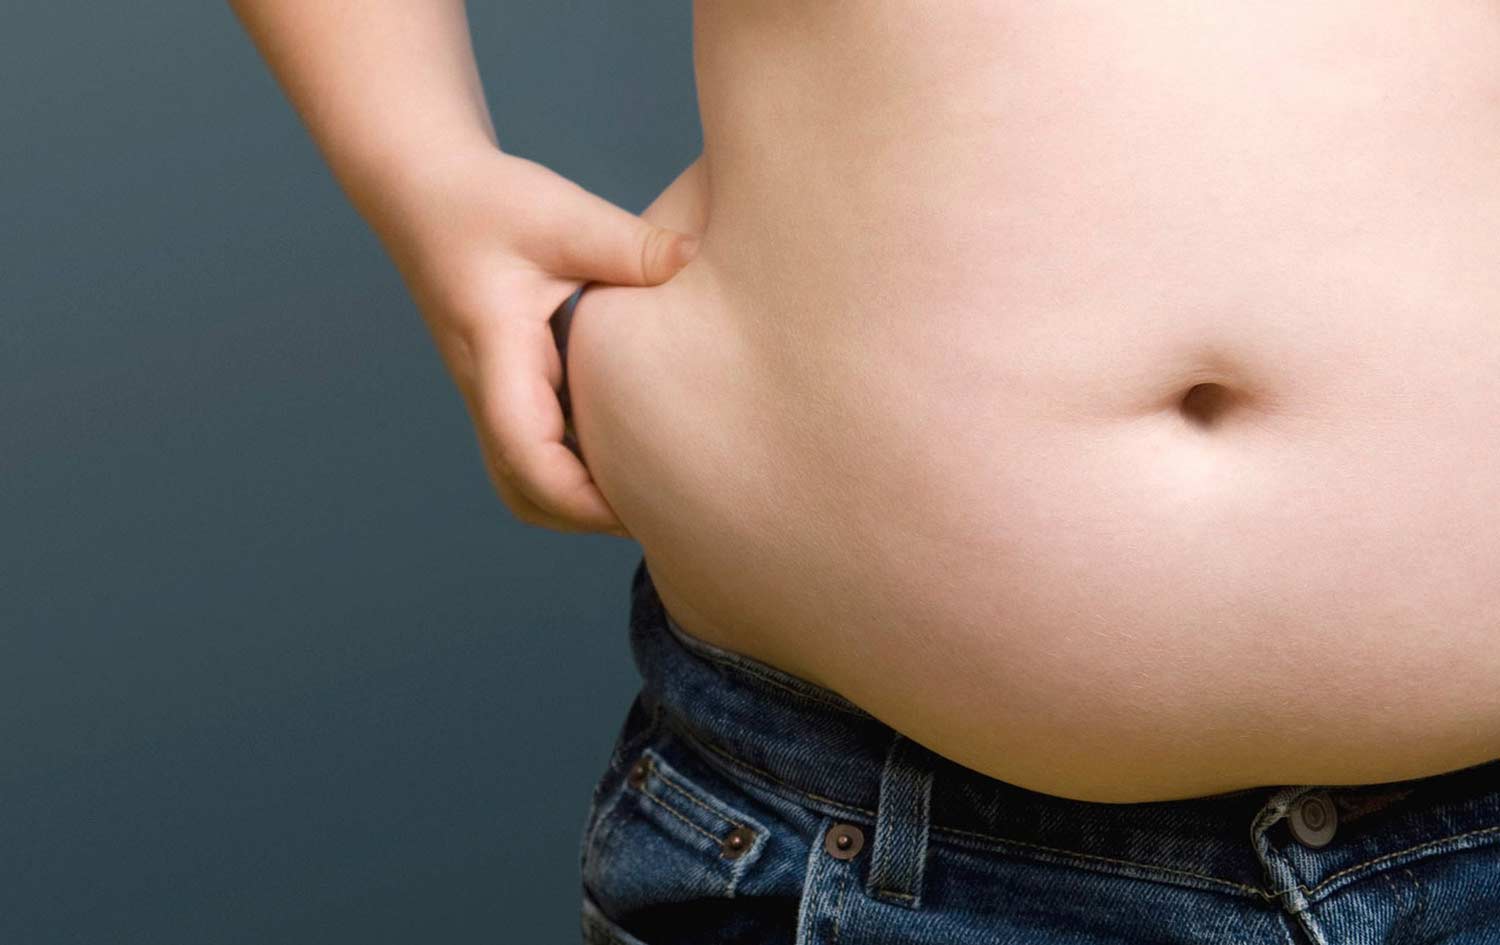 Adolescentes com sobrepeso têm risco elevado de doença cardiovascular